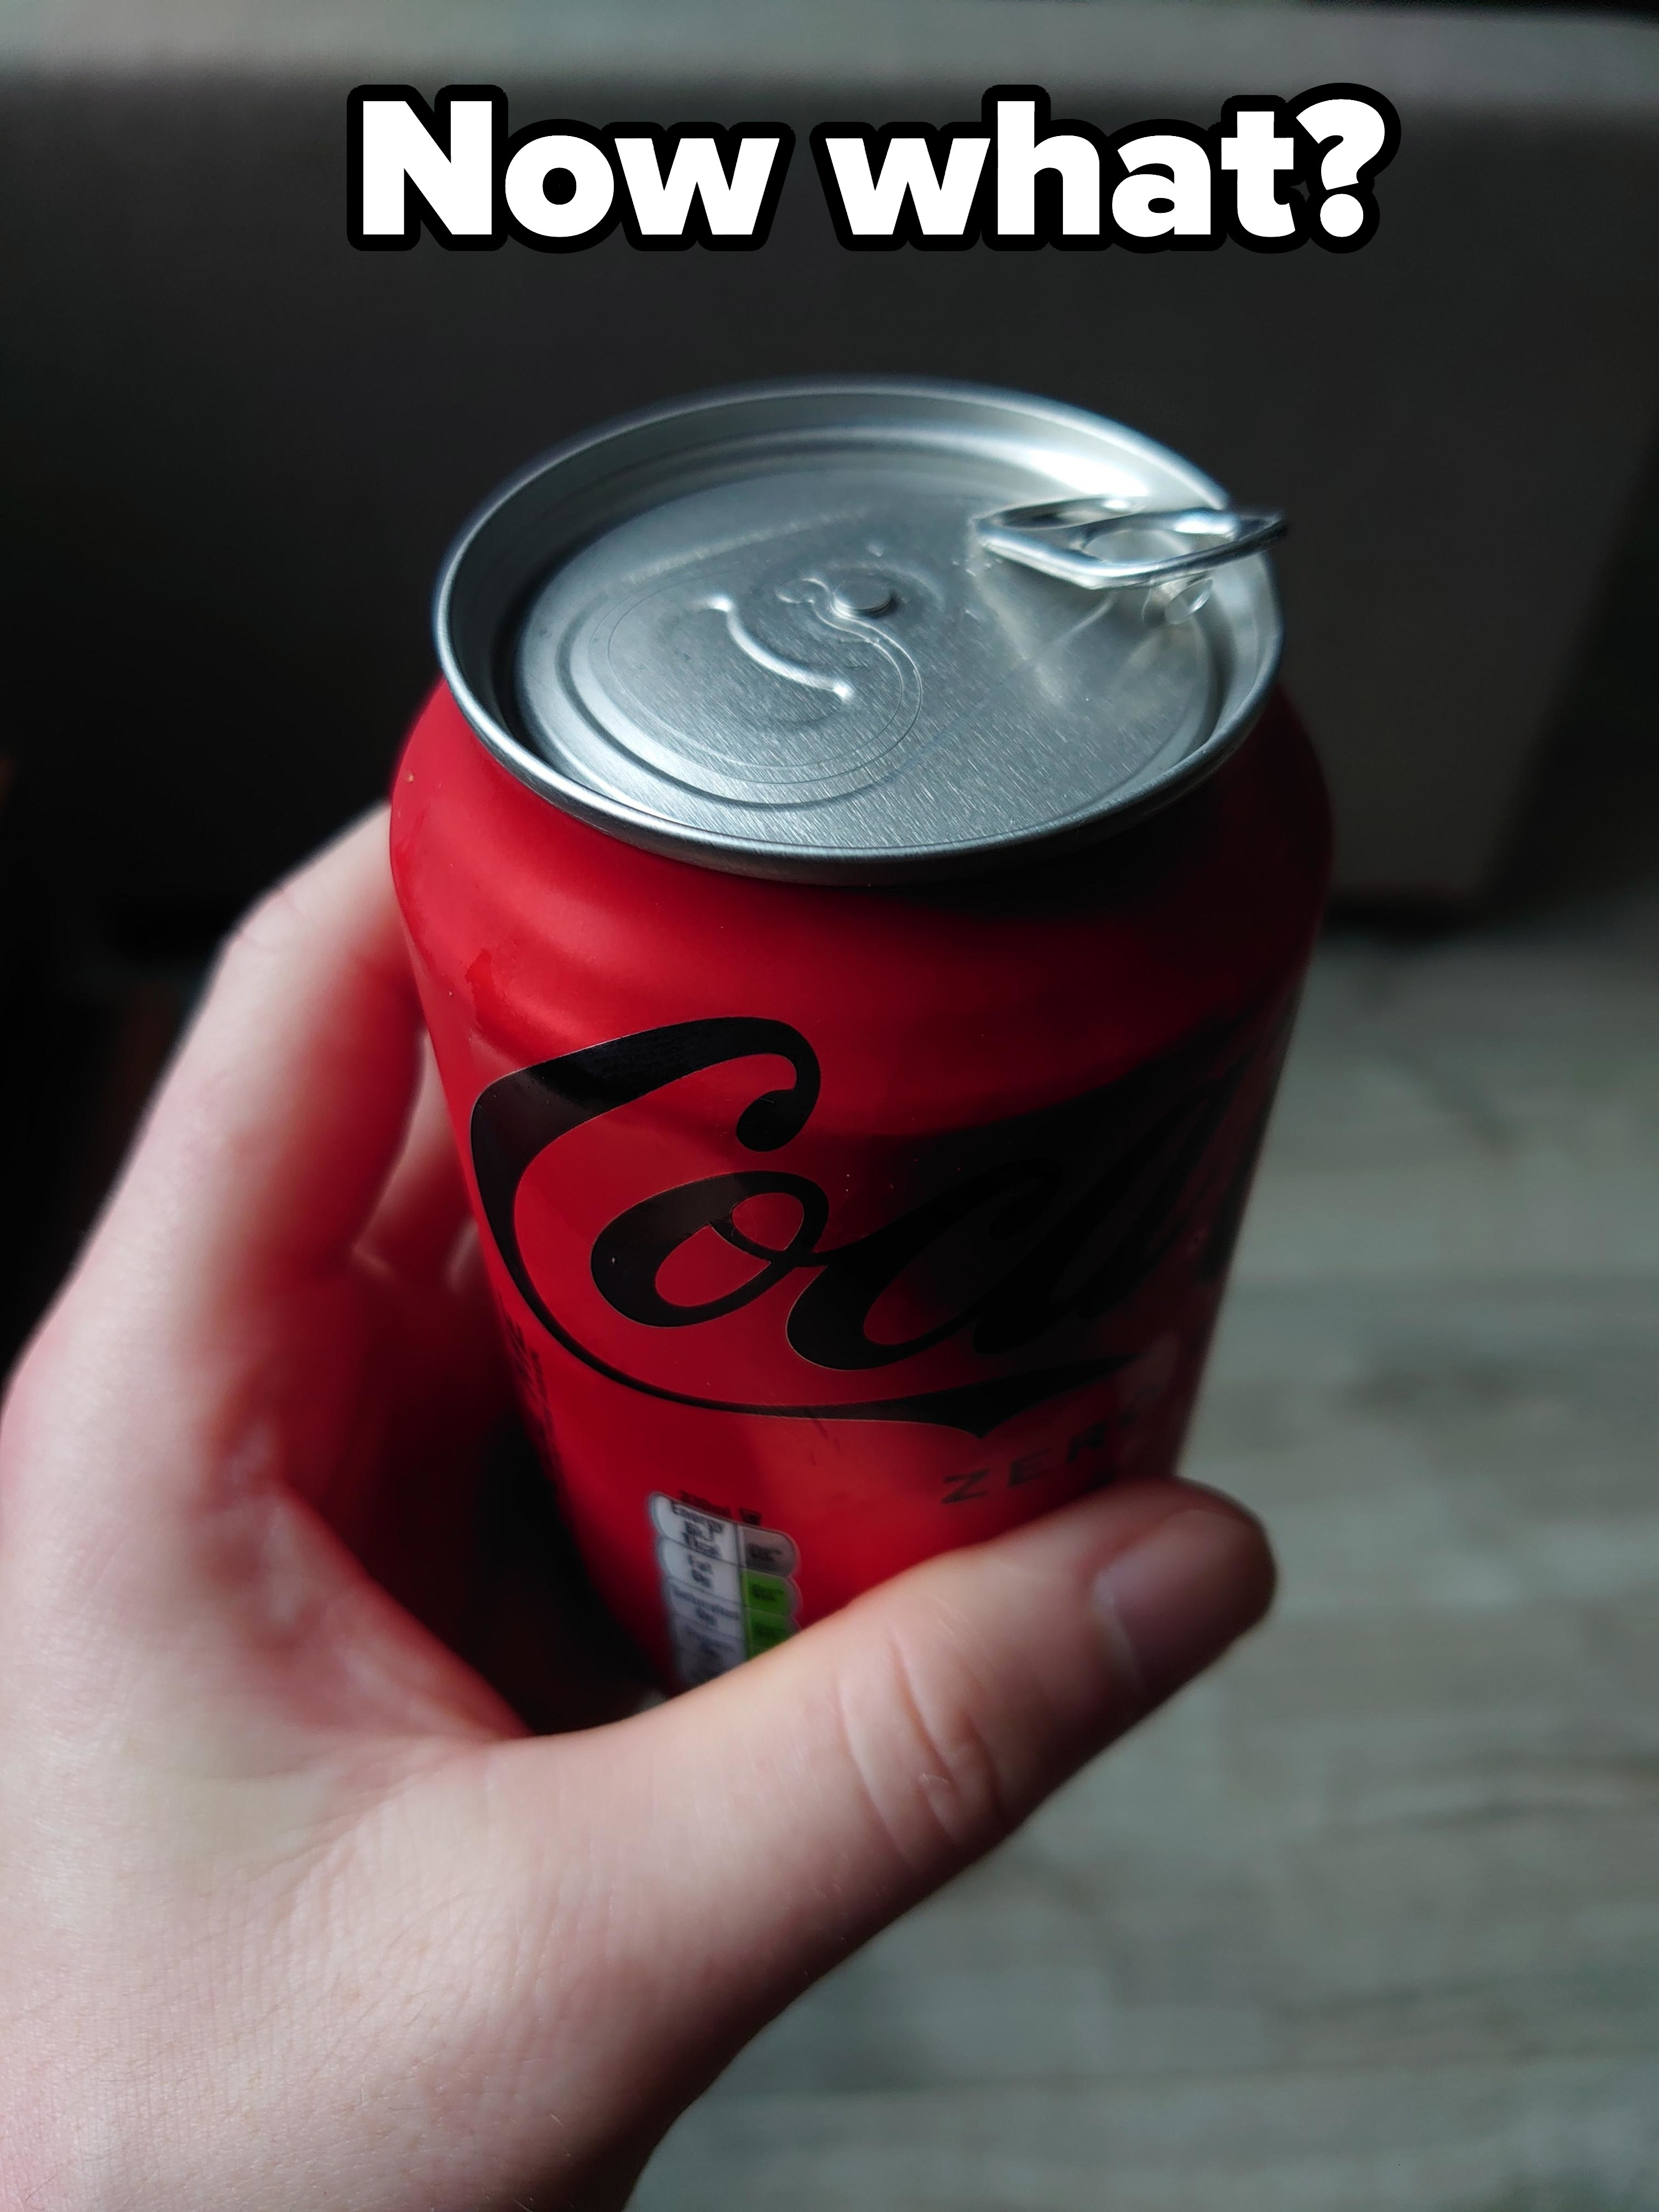 A broken Coke can